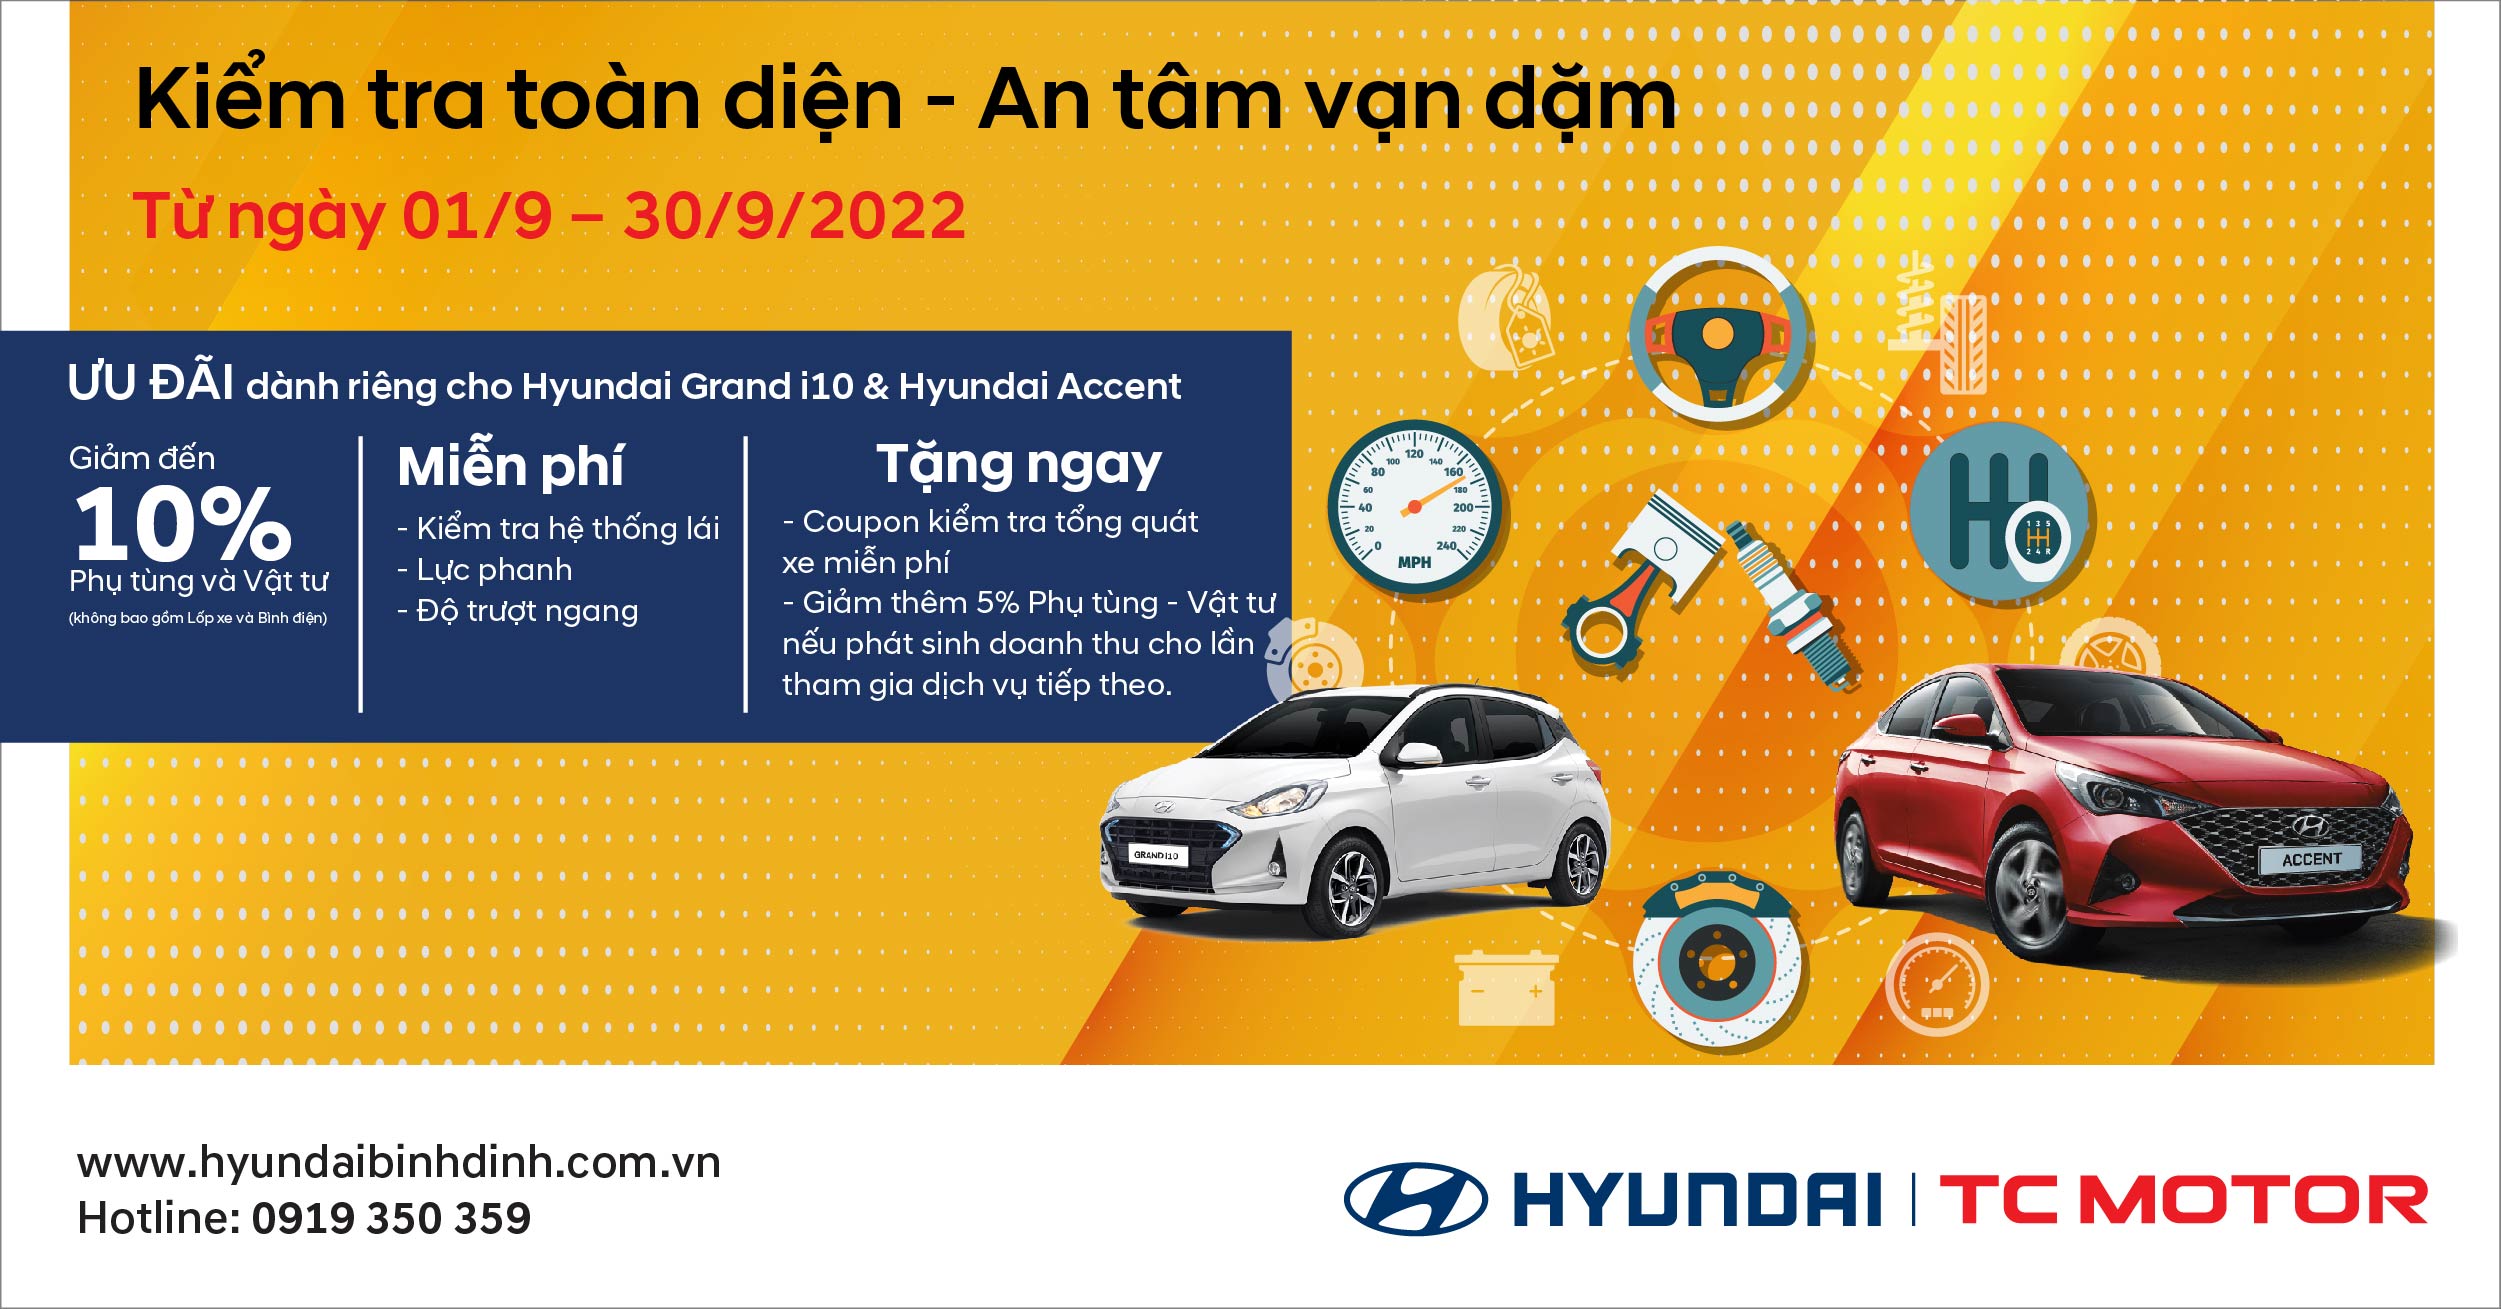 Chương trình “Kiểm tra toàn diện – An tâm vạn dặm” cùng Hyundai Bình Định - 1